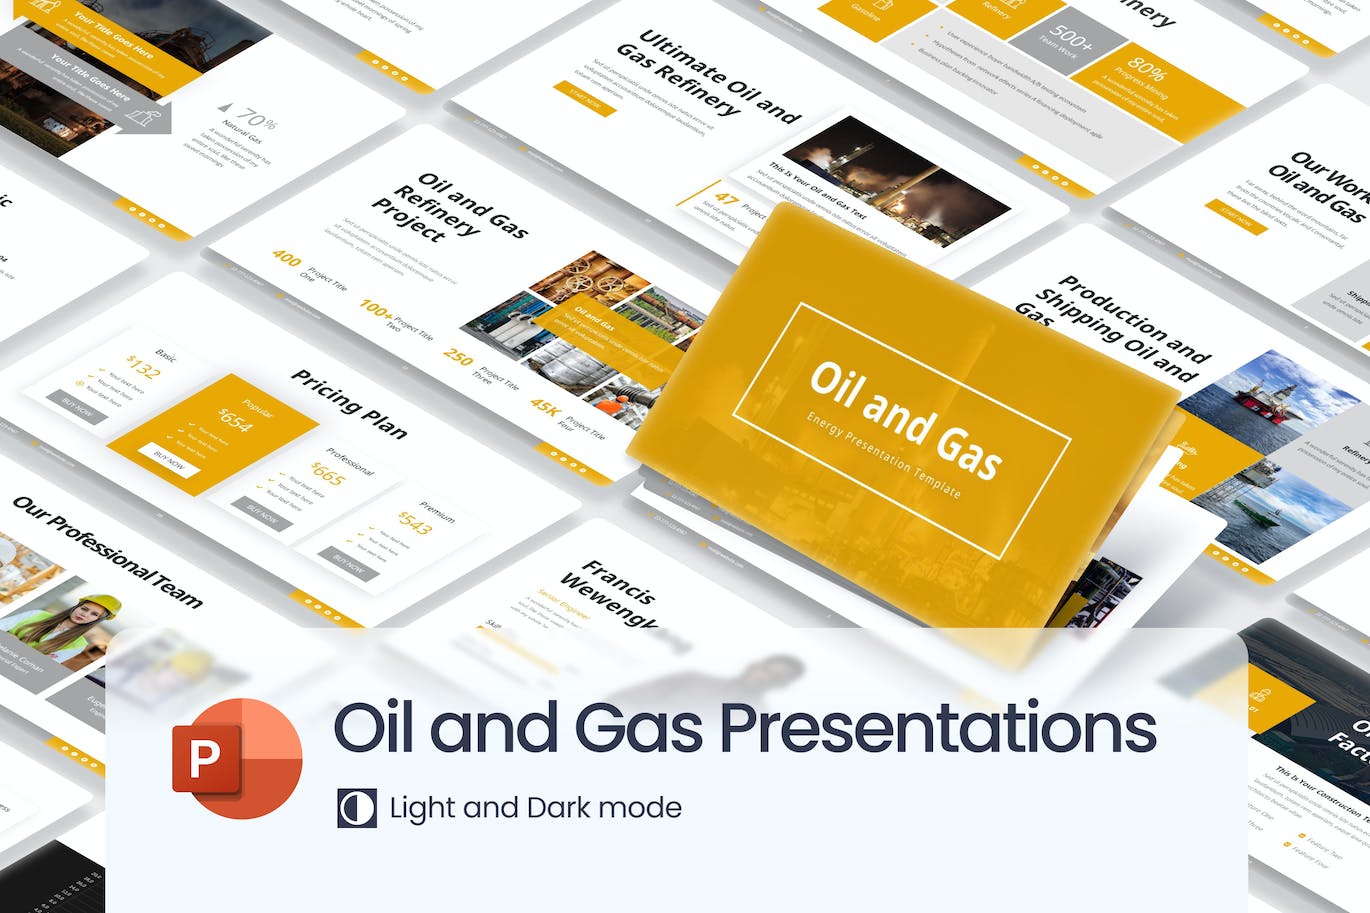 石油和天然气能源业务演示PPT幻灯片模板免费下载